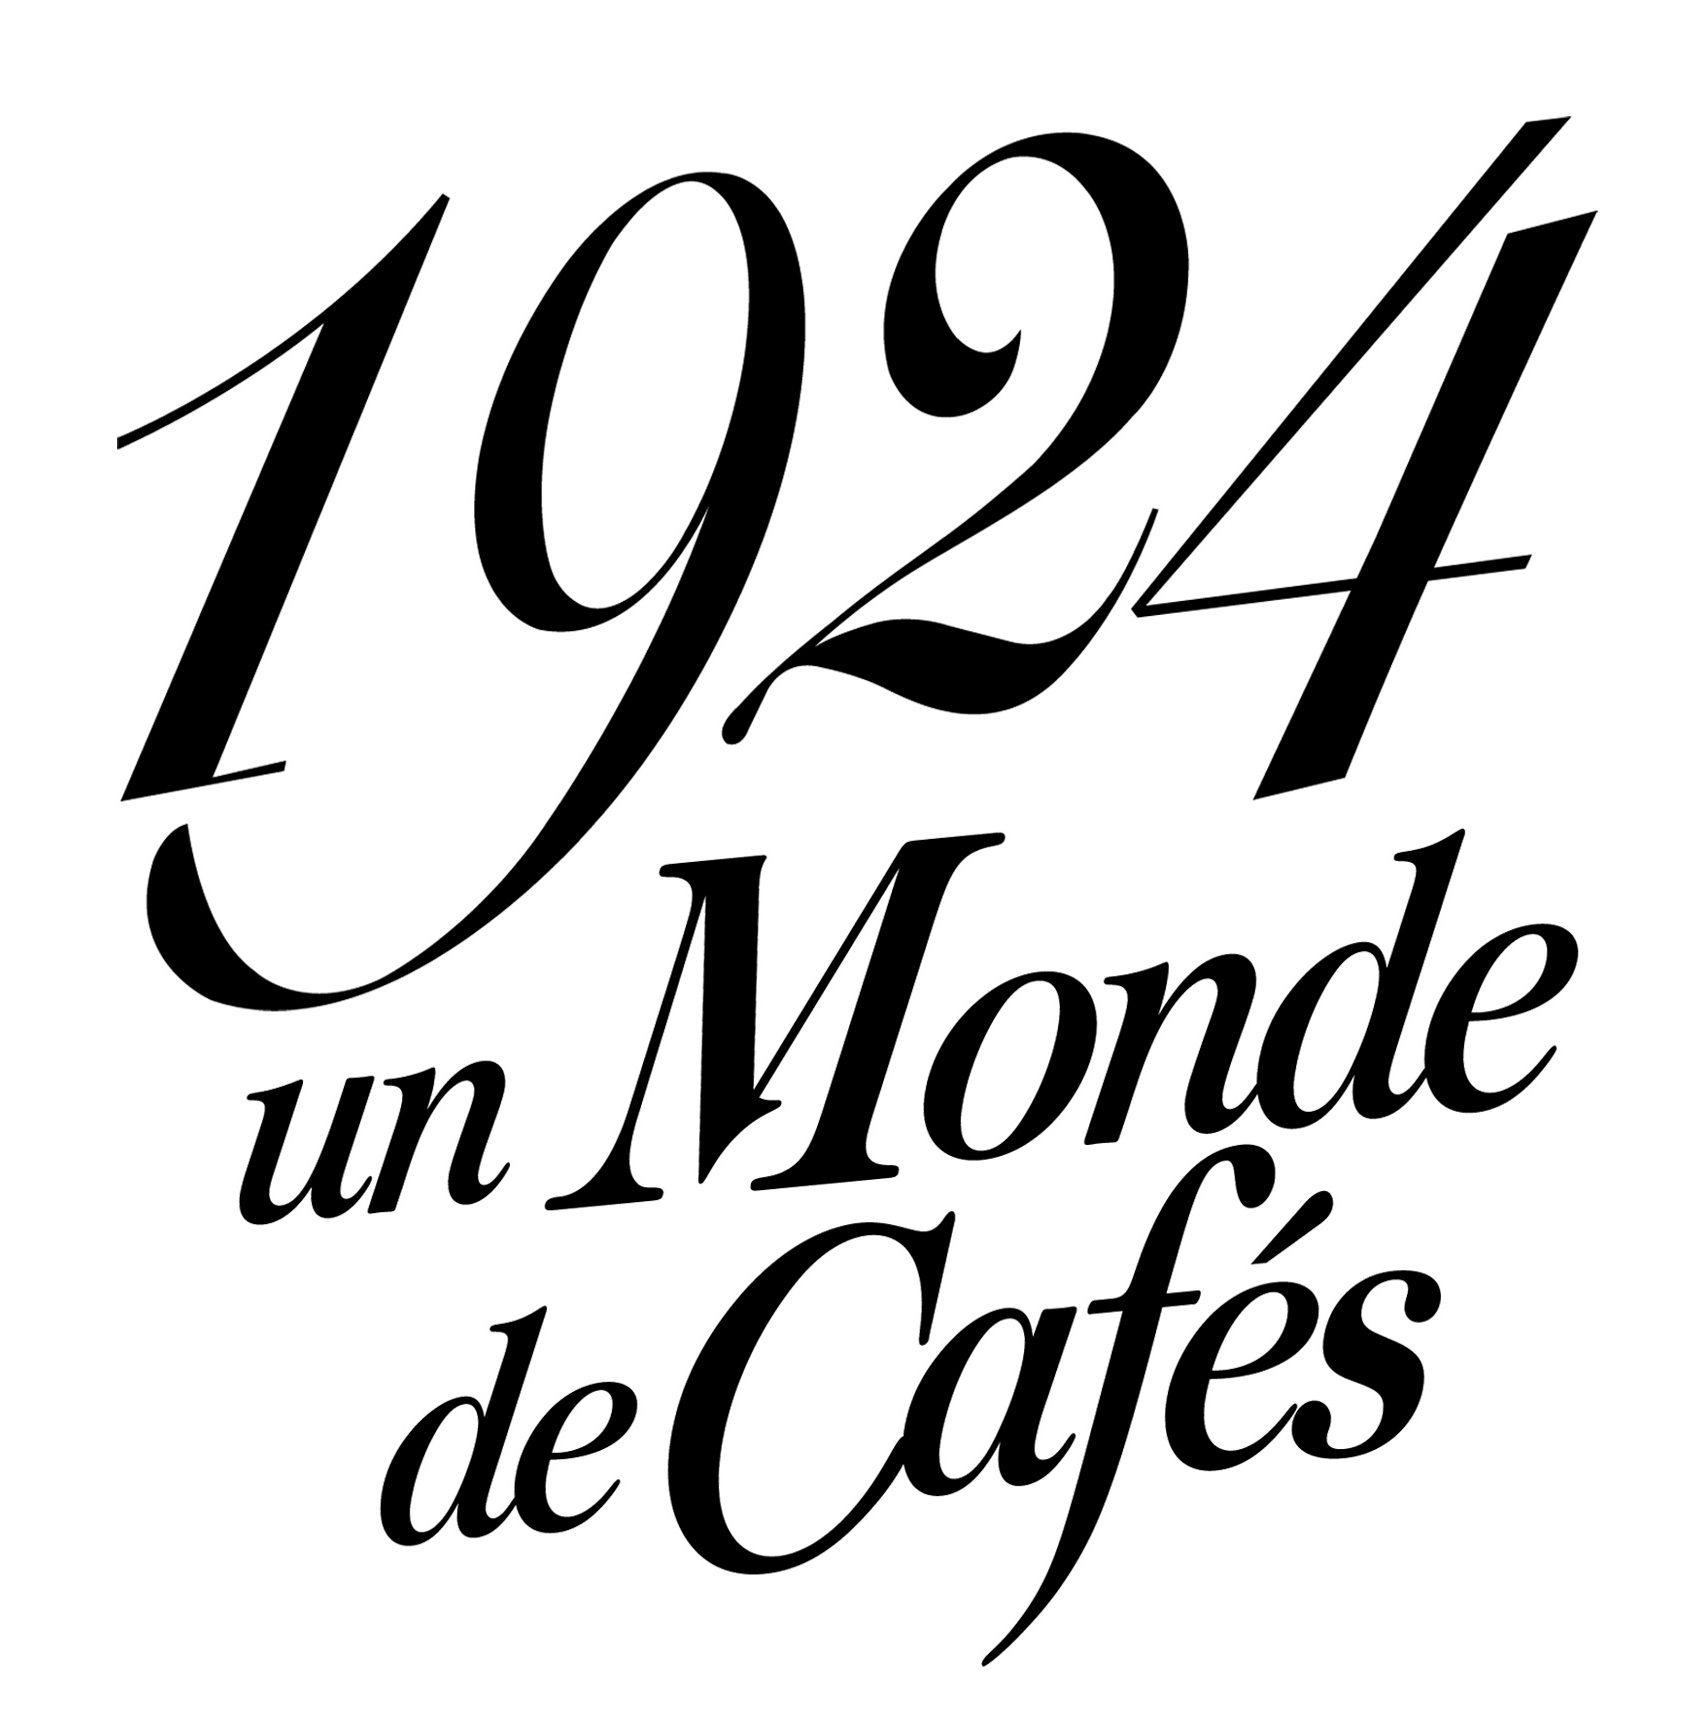 Cafe 1924 logo